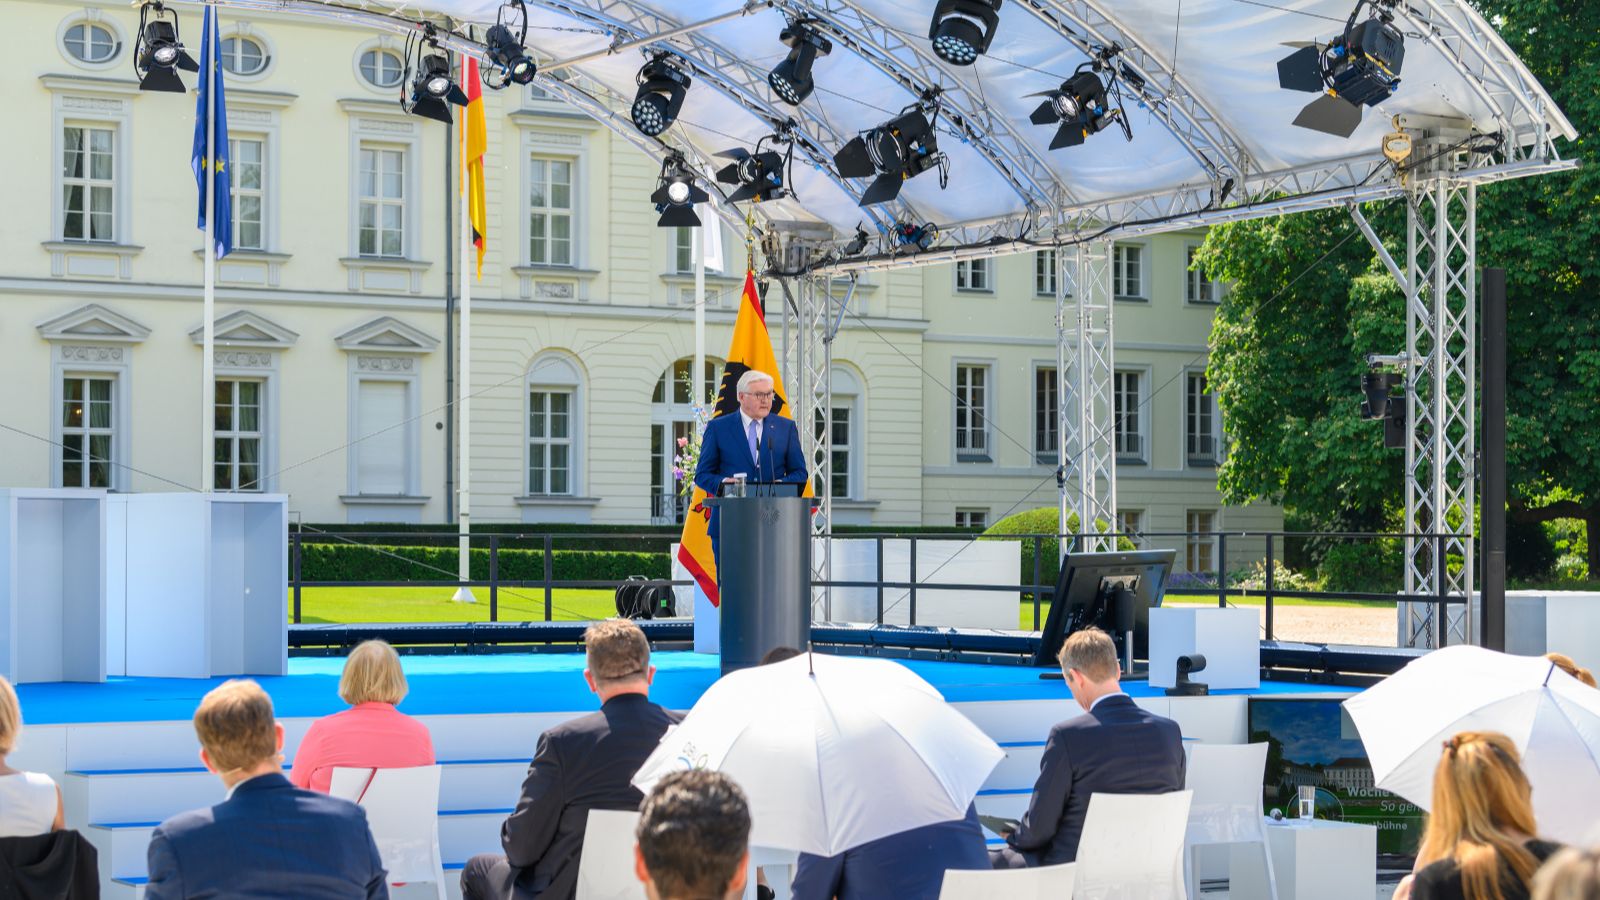 Präsident Steinmeier hält eine Rede auf einer Bühne